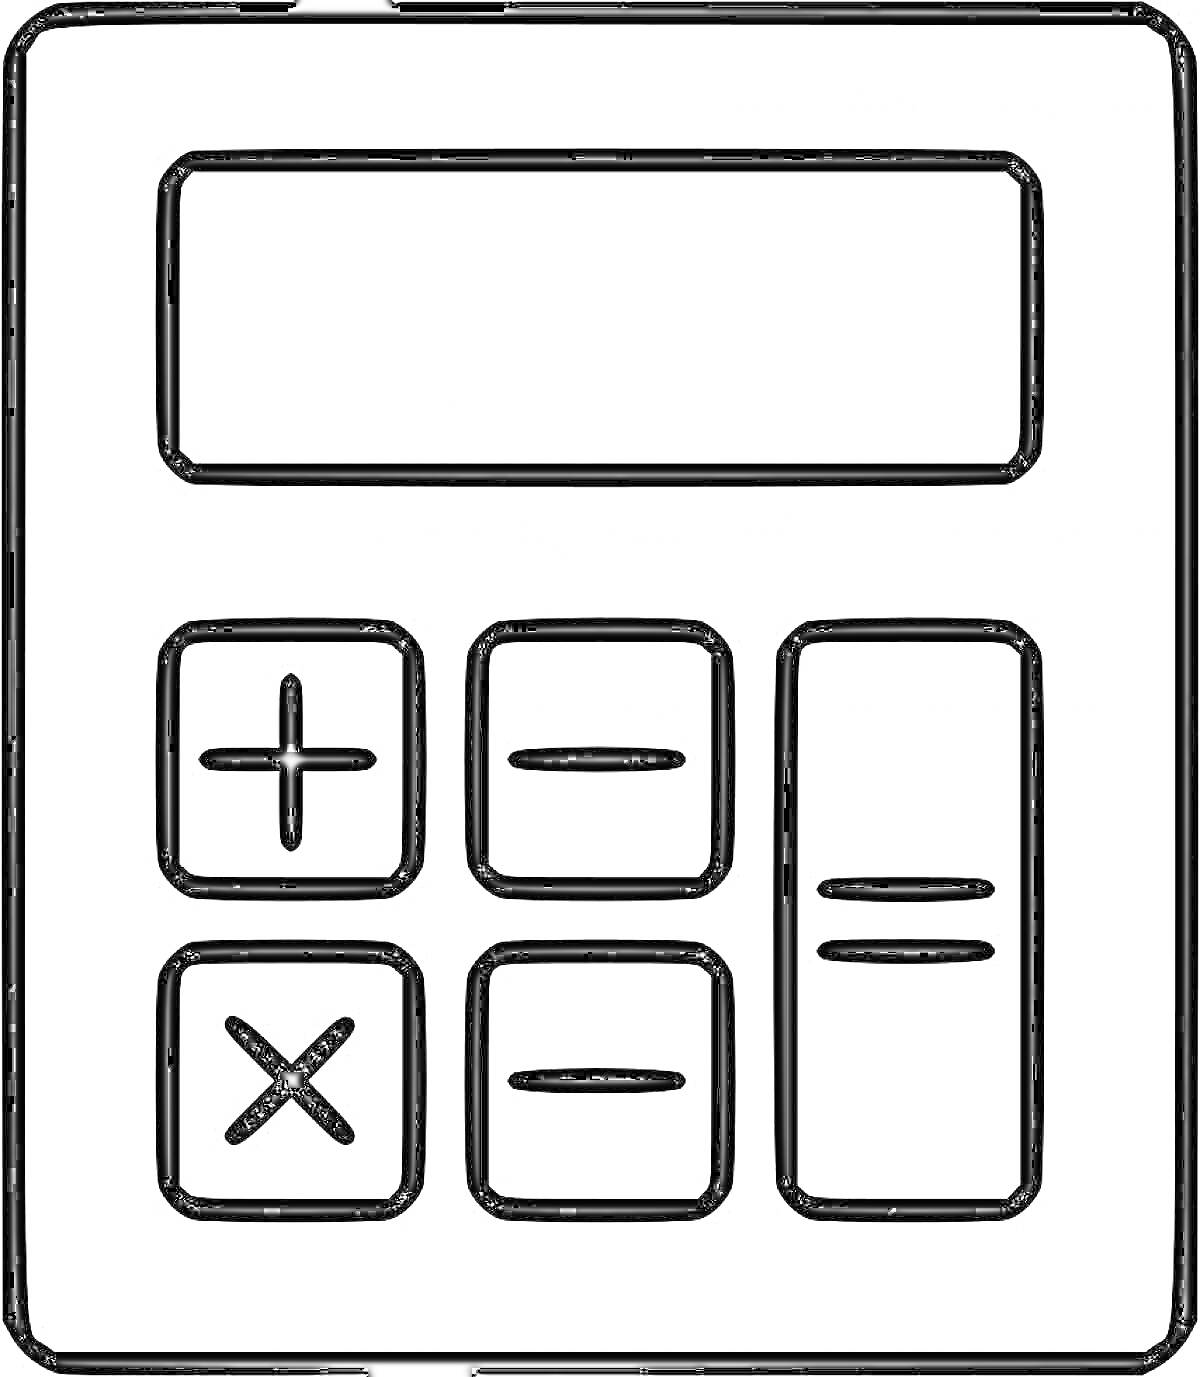 Калькулятор с кнопками: плюс, минус, умножить, разделить, экран